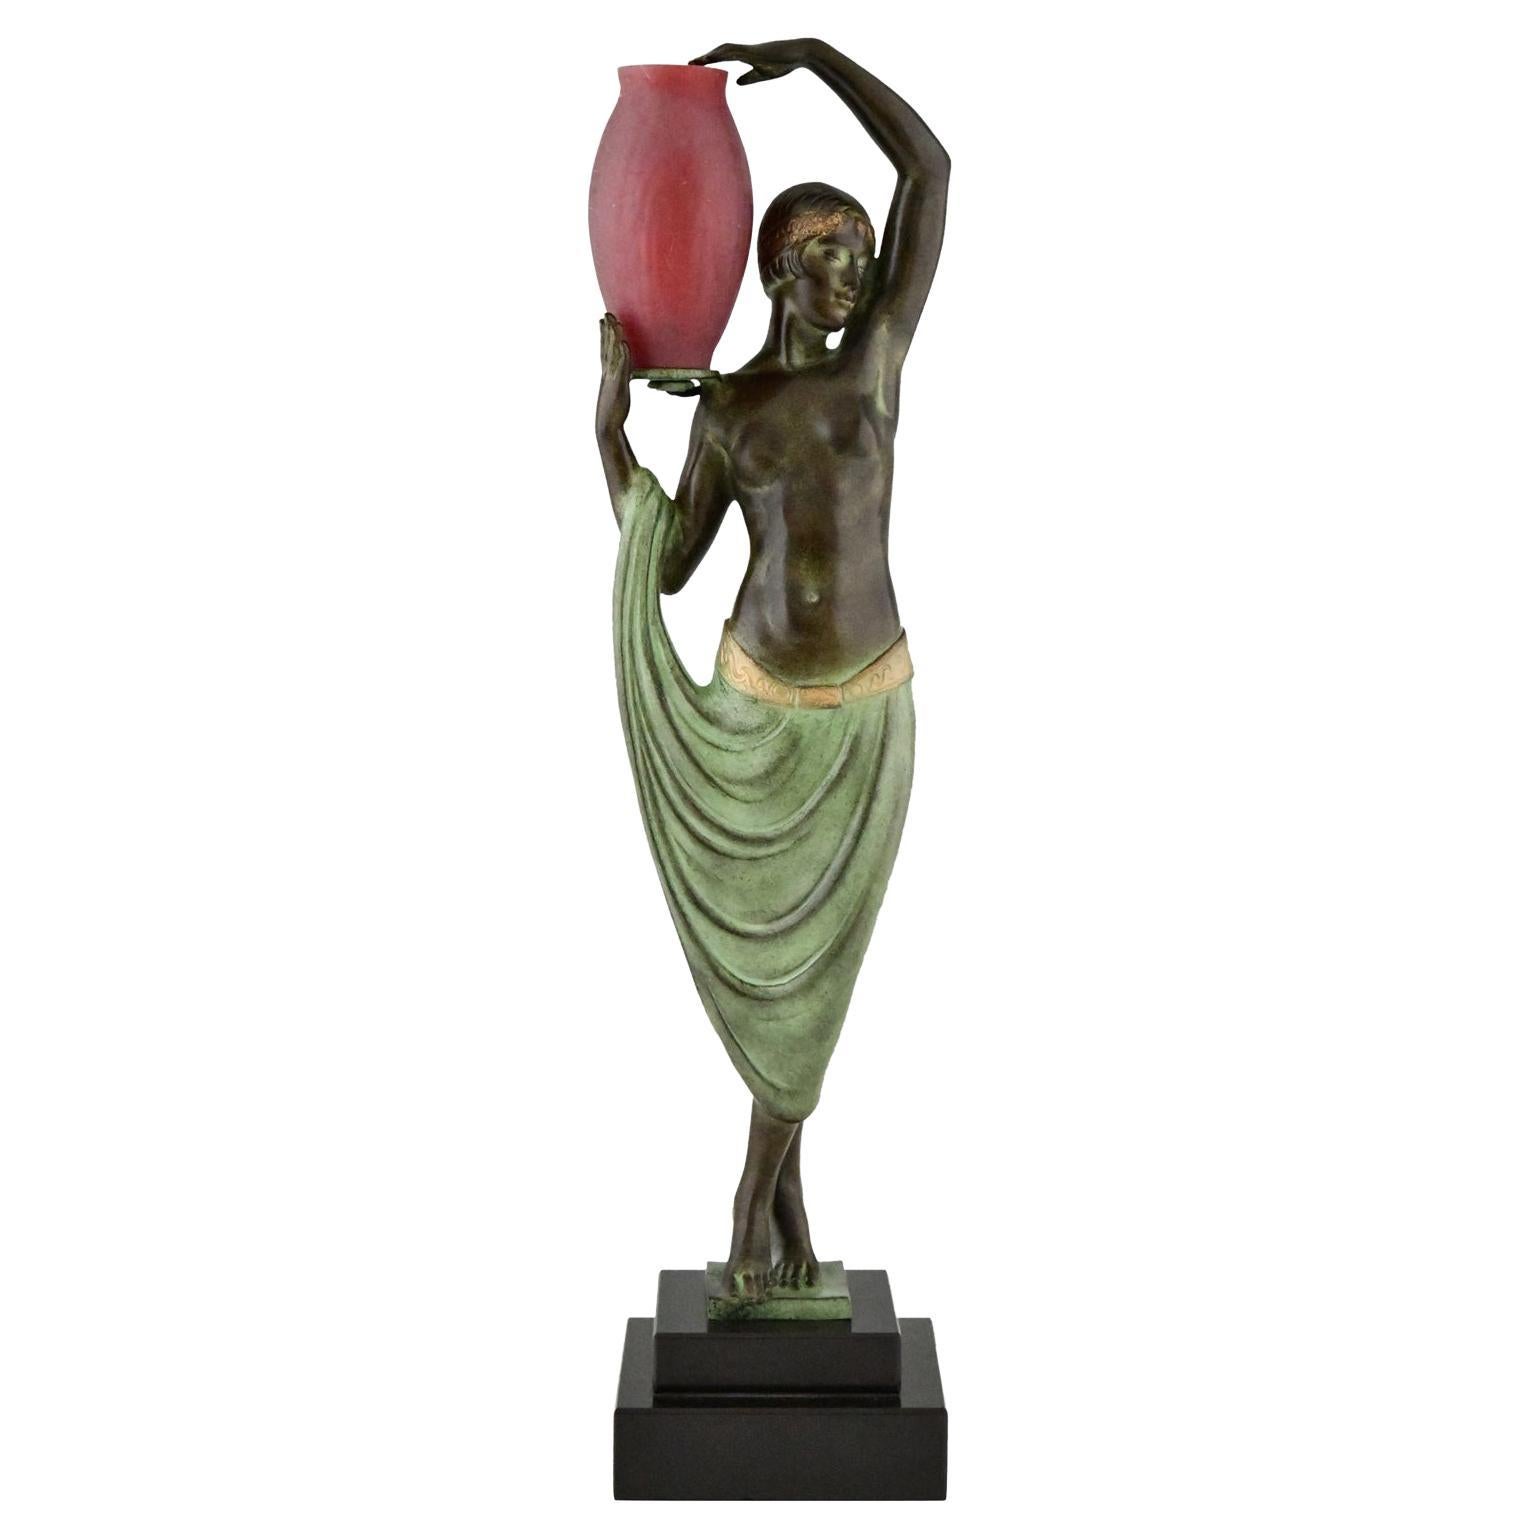 Art Deco Style Lamp Sculpture Nude with Vase Le Faguays Max Le Verrier Odalisque